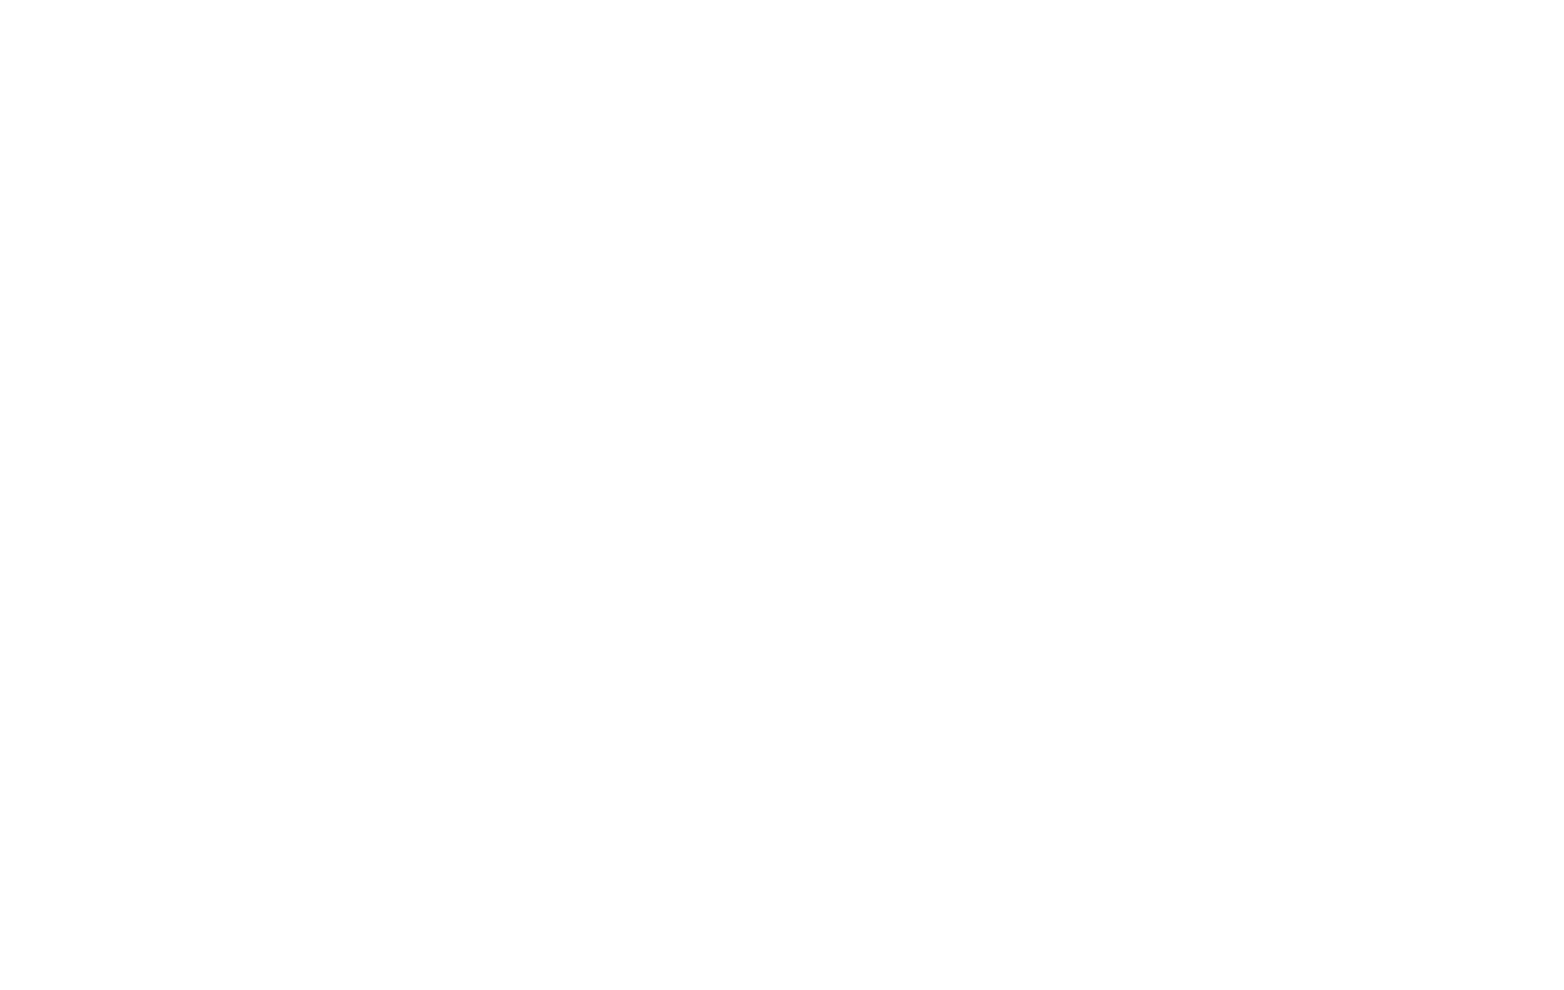 Culpepper Construction